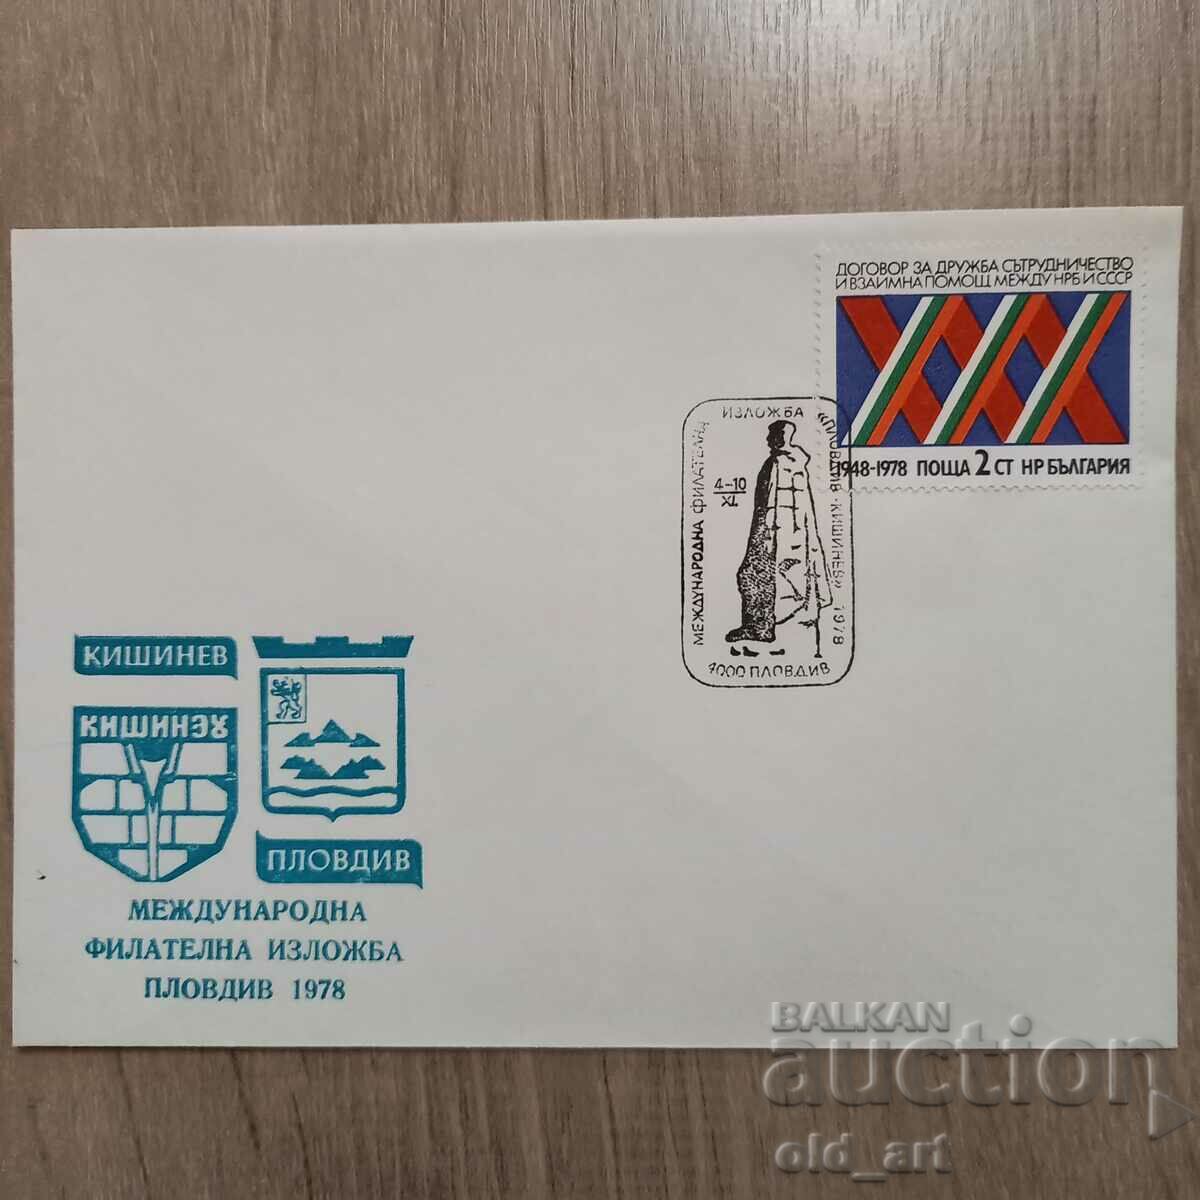 Ταχυδρομικός φάκελος - Int. φιλοτελική έκθεση Plovdiv 78